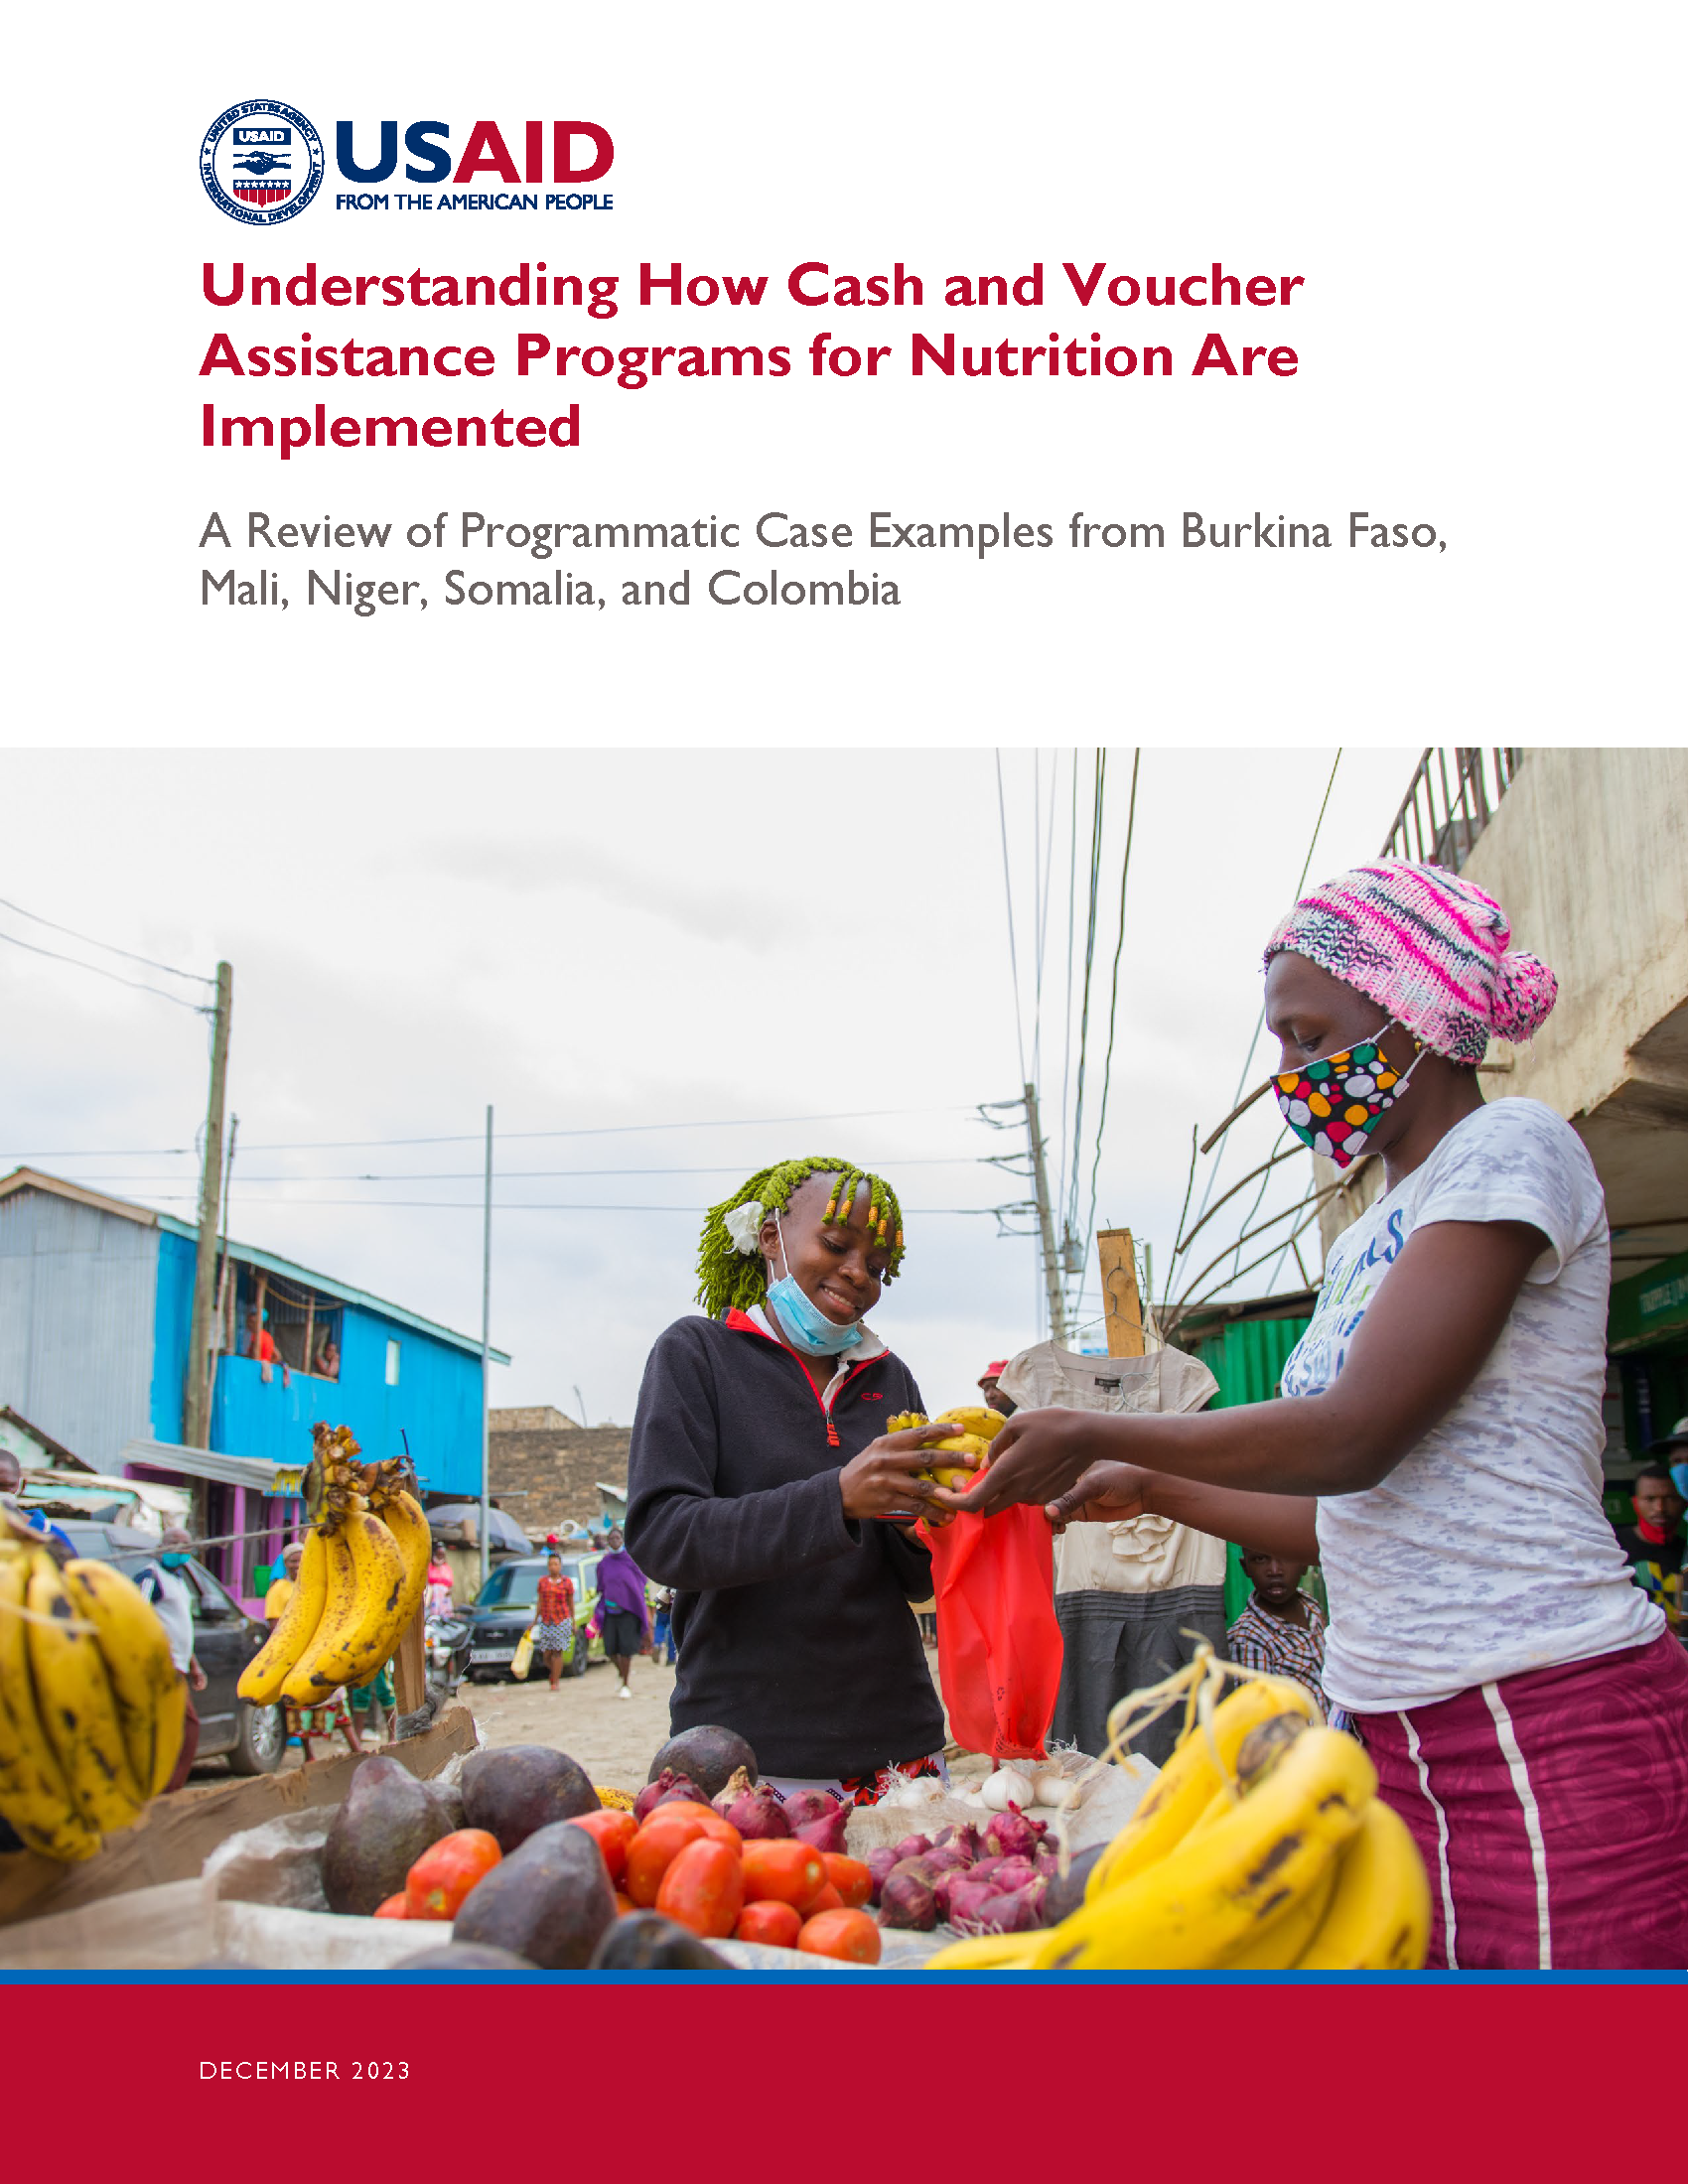 Page de couverture pour Comprendre comment les programmes d'aide en espèces et en bons d'achat pour la nutrition sont mis en œuvre : un examen d'exemples de programmes du Burkina Faso, du Mali, du Niger, de la Somalie et de la Colombie